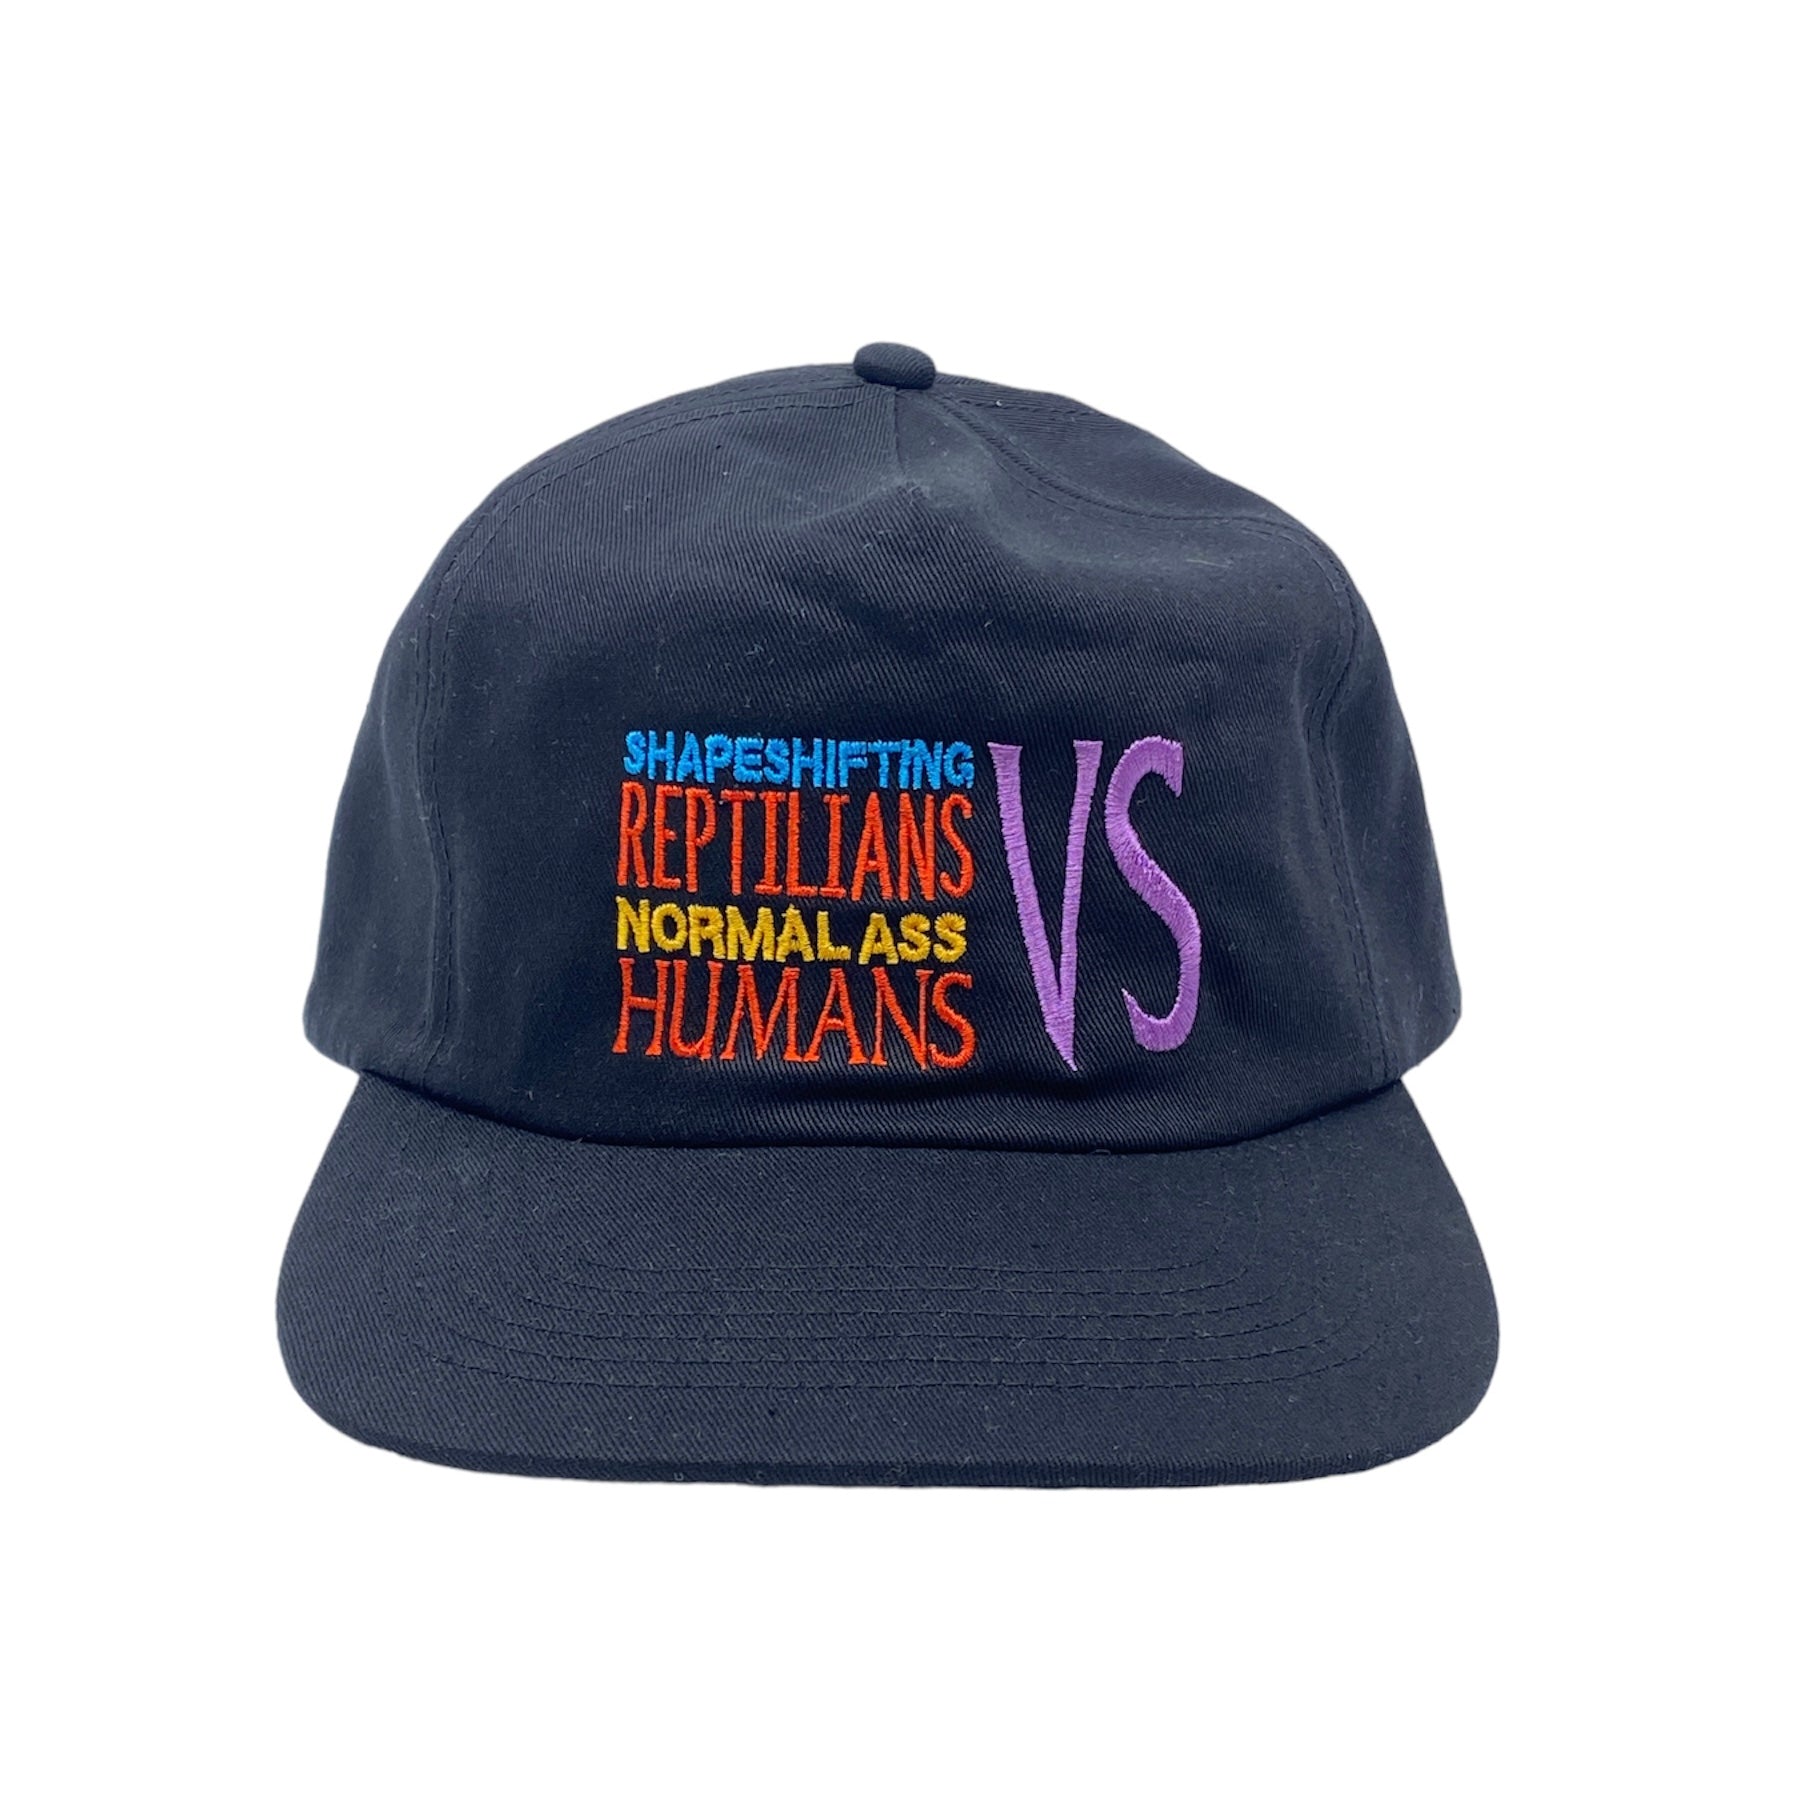 Reptilians VS Humans